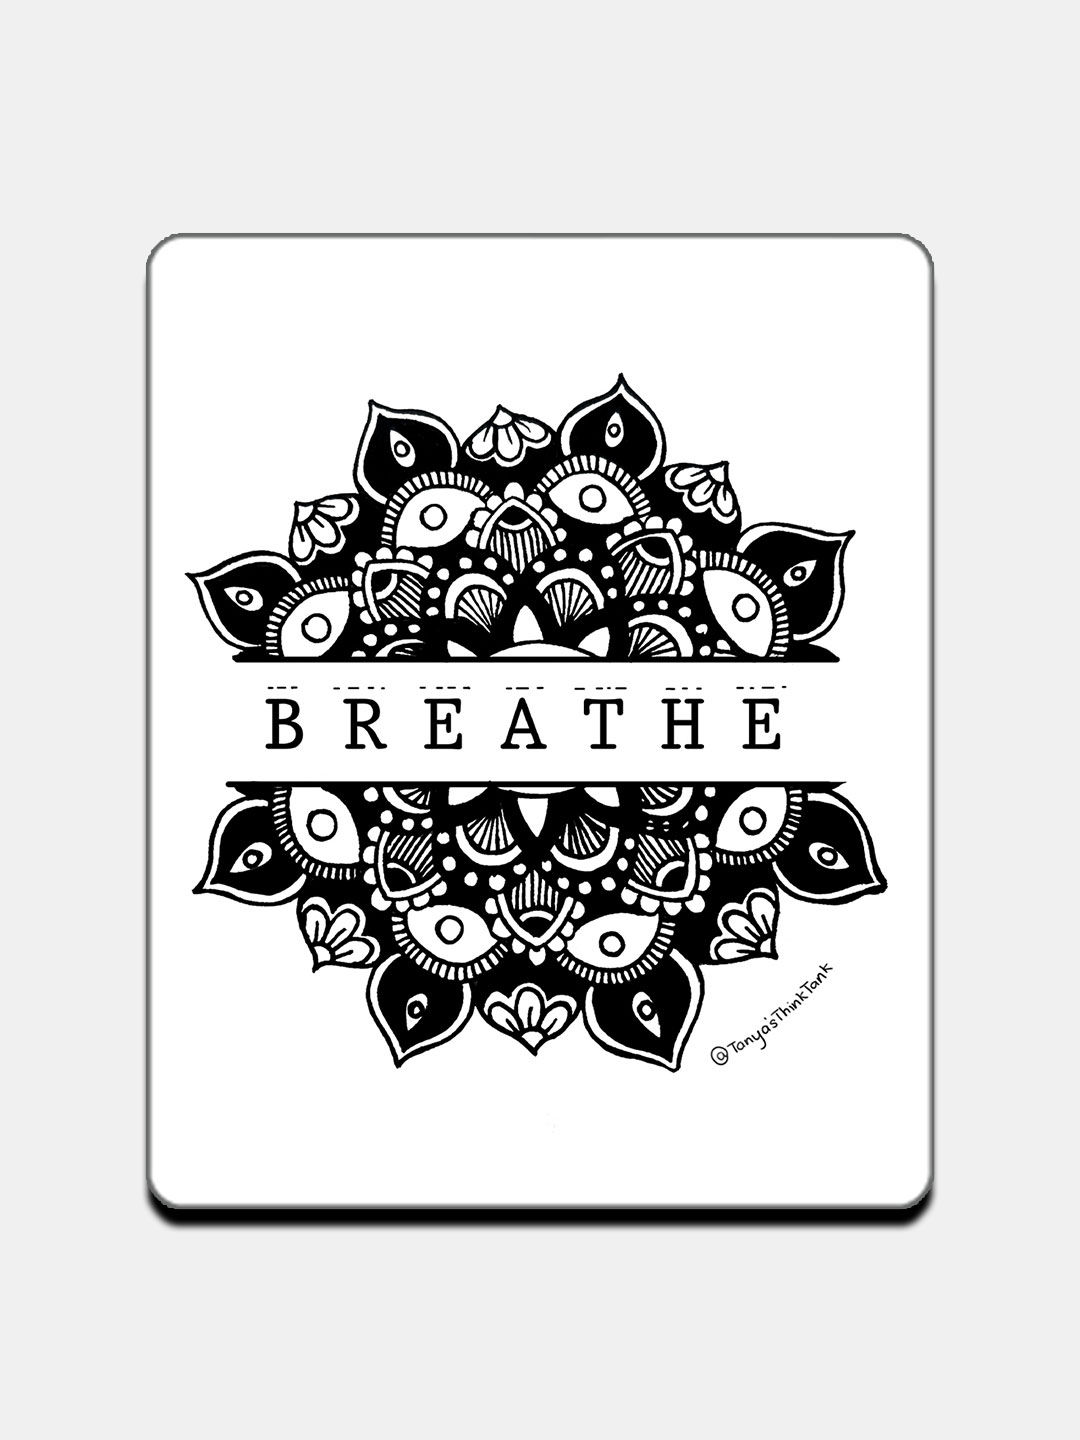 Buy Breathe White - Fridge Magnets Fridge Magnets Online